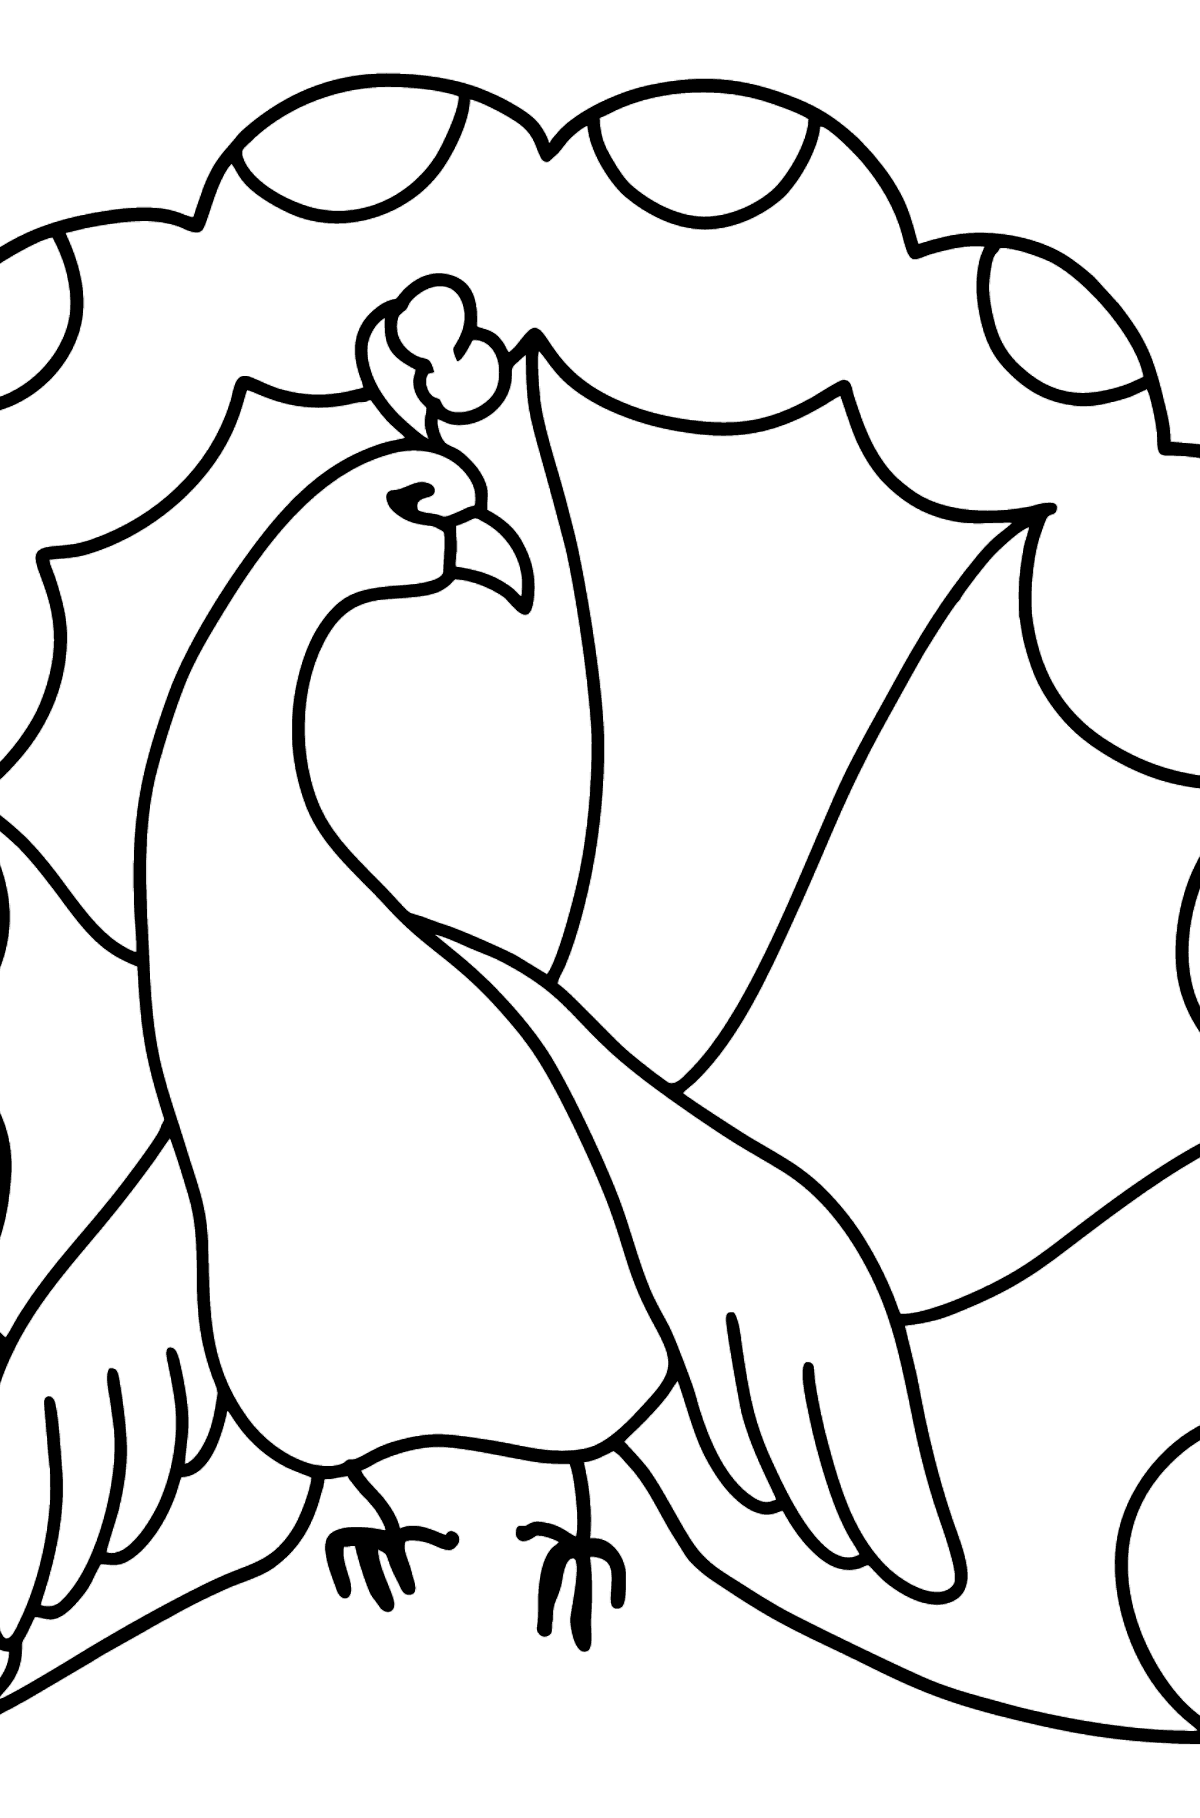 Påfugl tegning til farvning - Tegninger til farvelægning for børn